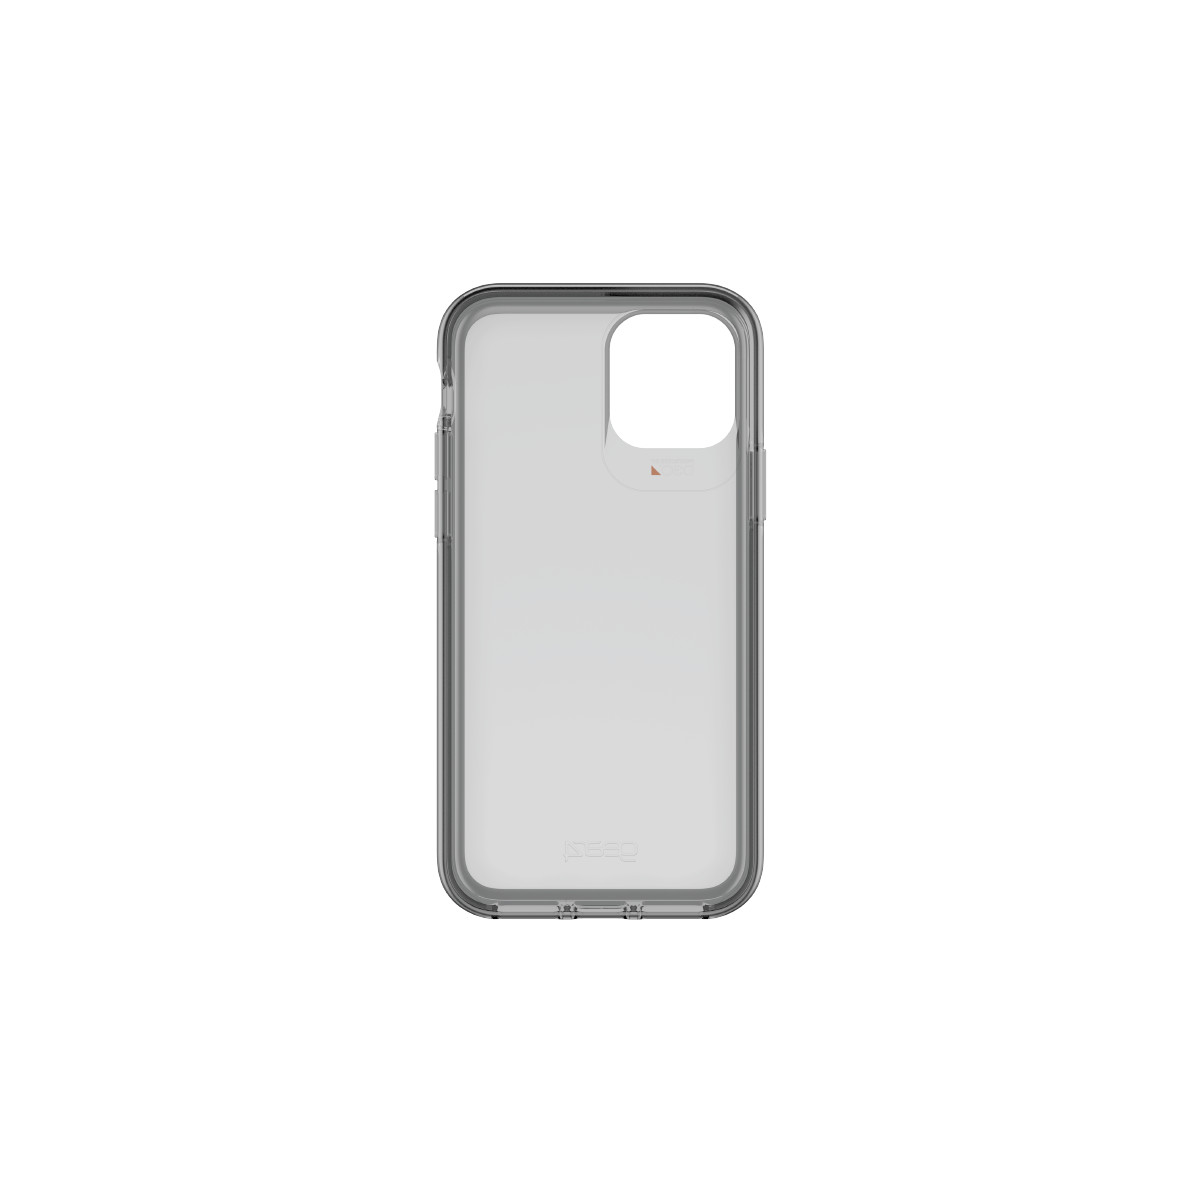 Hình ảnh Ốp lưng chống sốc Gear4 D3O Hampton 4m cho iPhone 11 Pro / iPhone 11 Pro Max - Hàng chính hãng